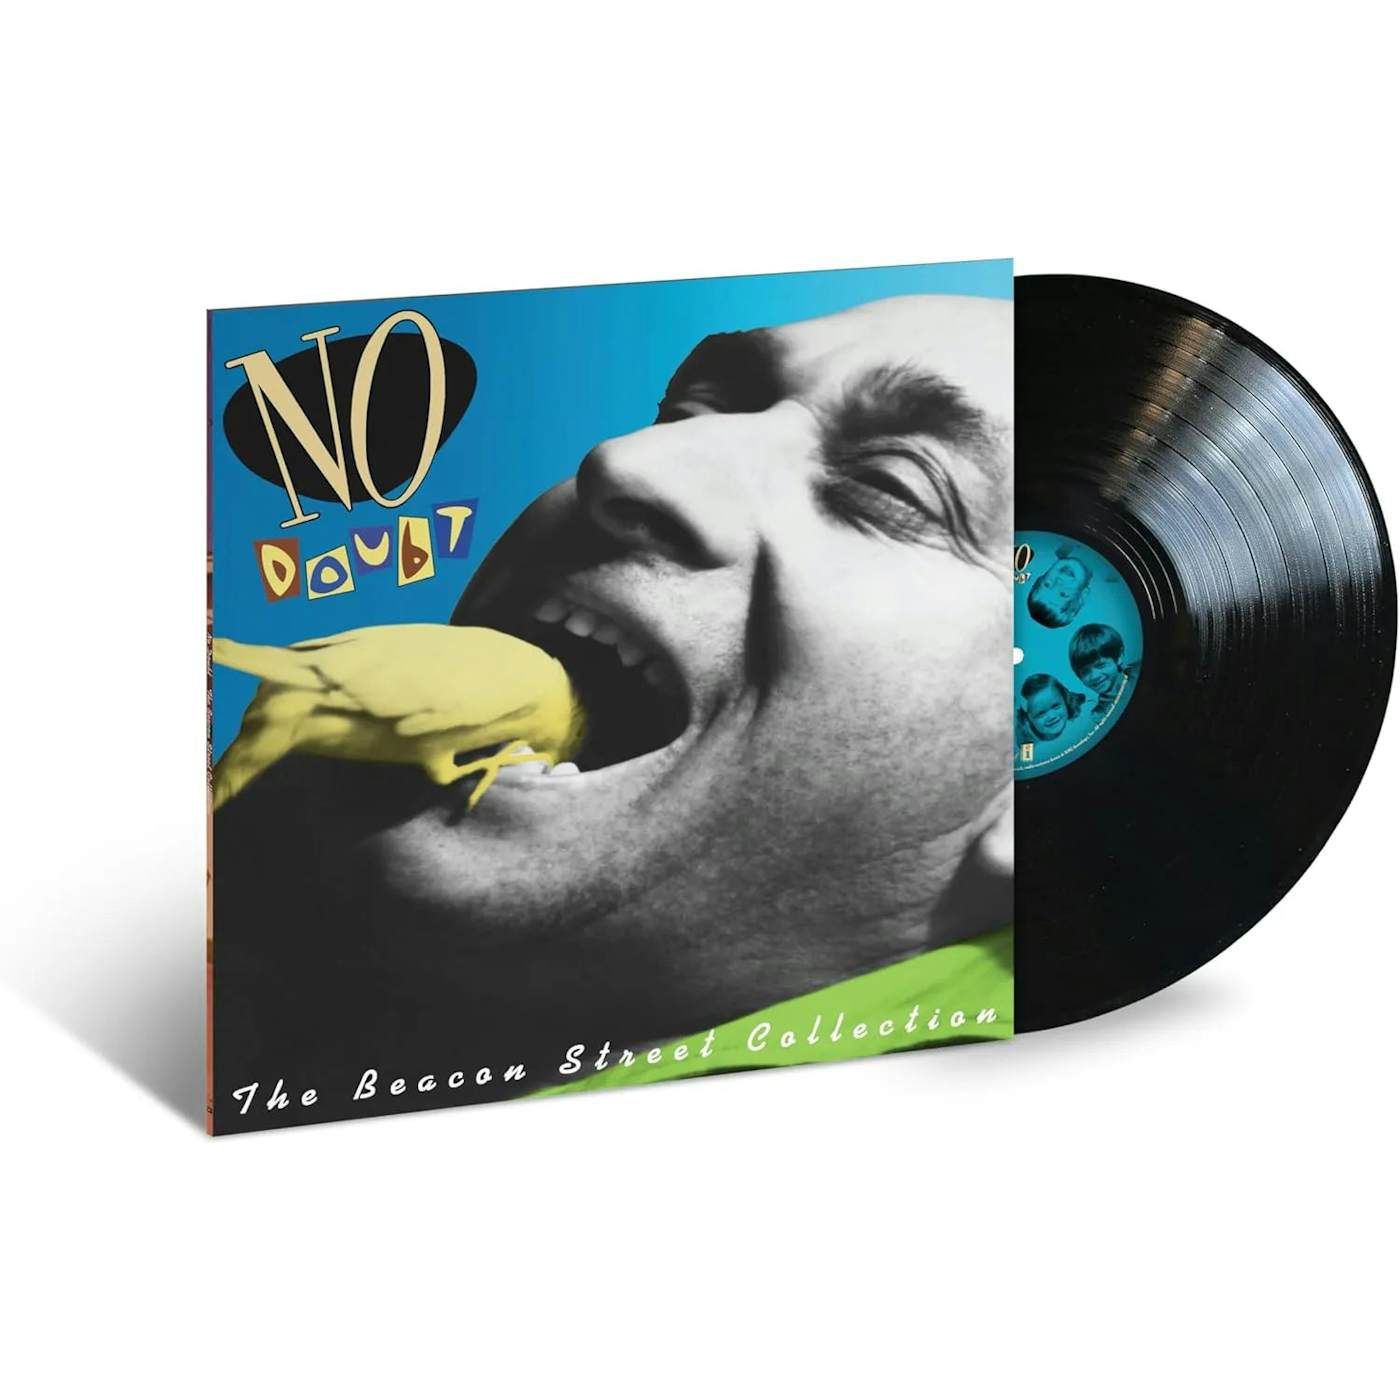 No Doubt - The Beacon Street Collection (Vinyl)